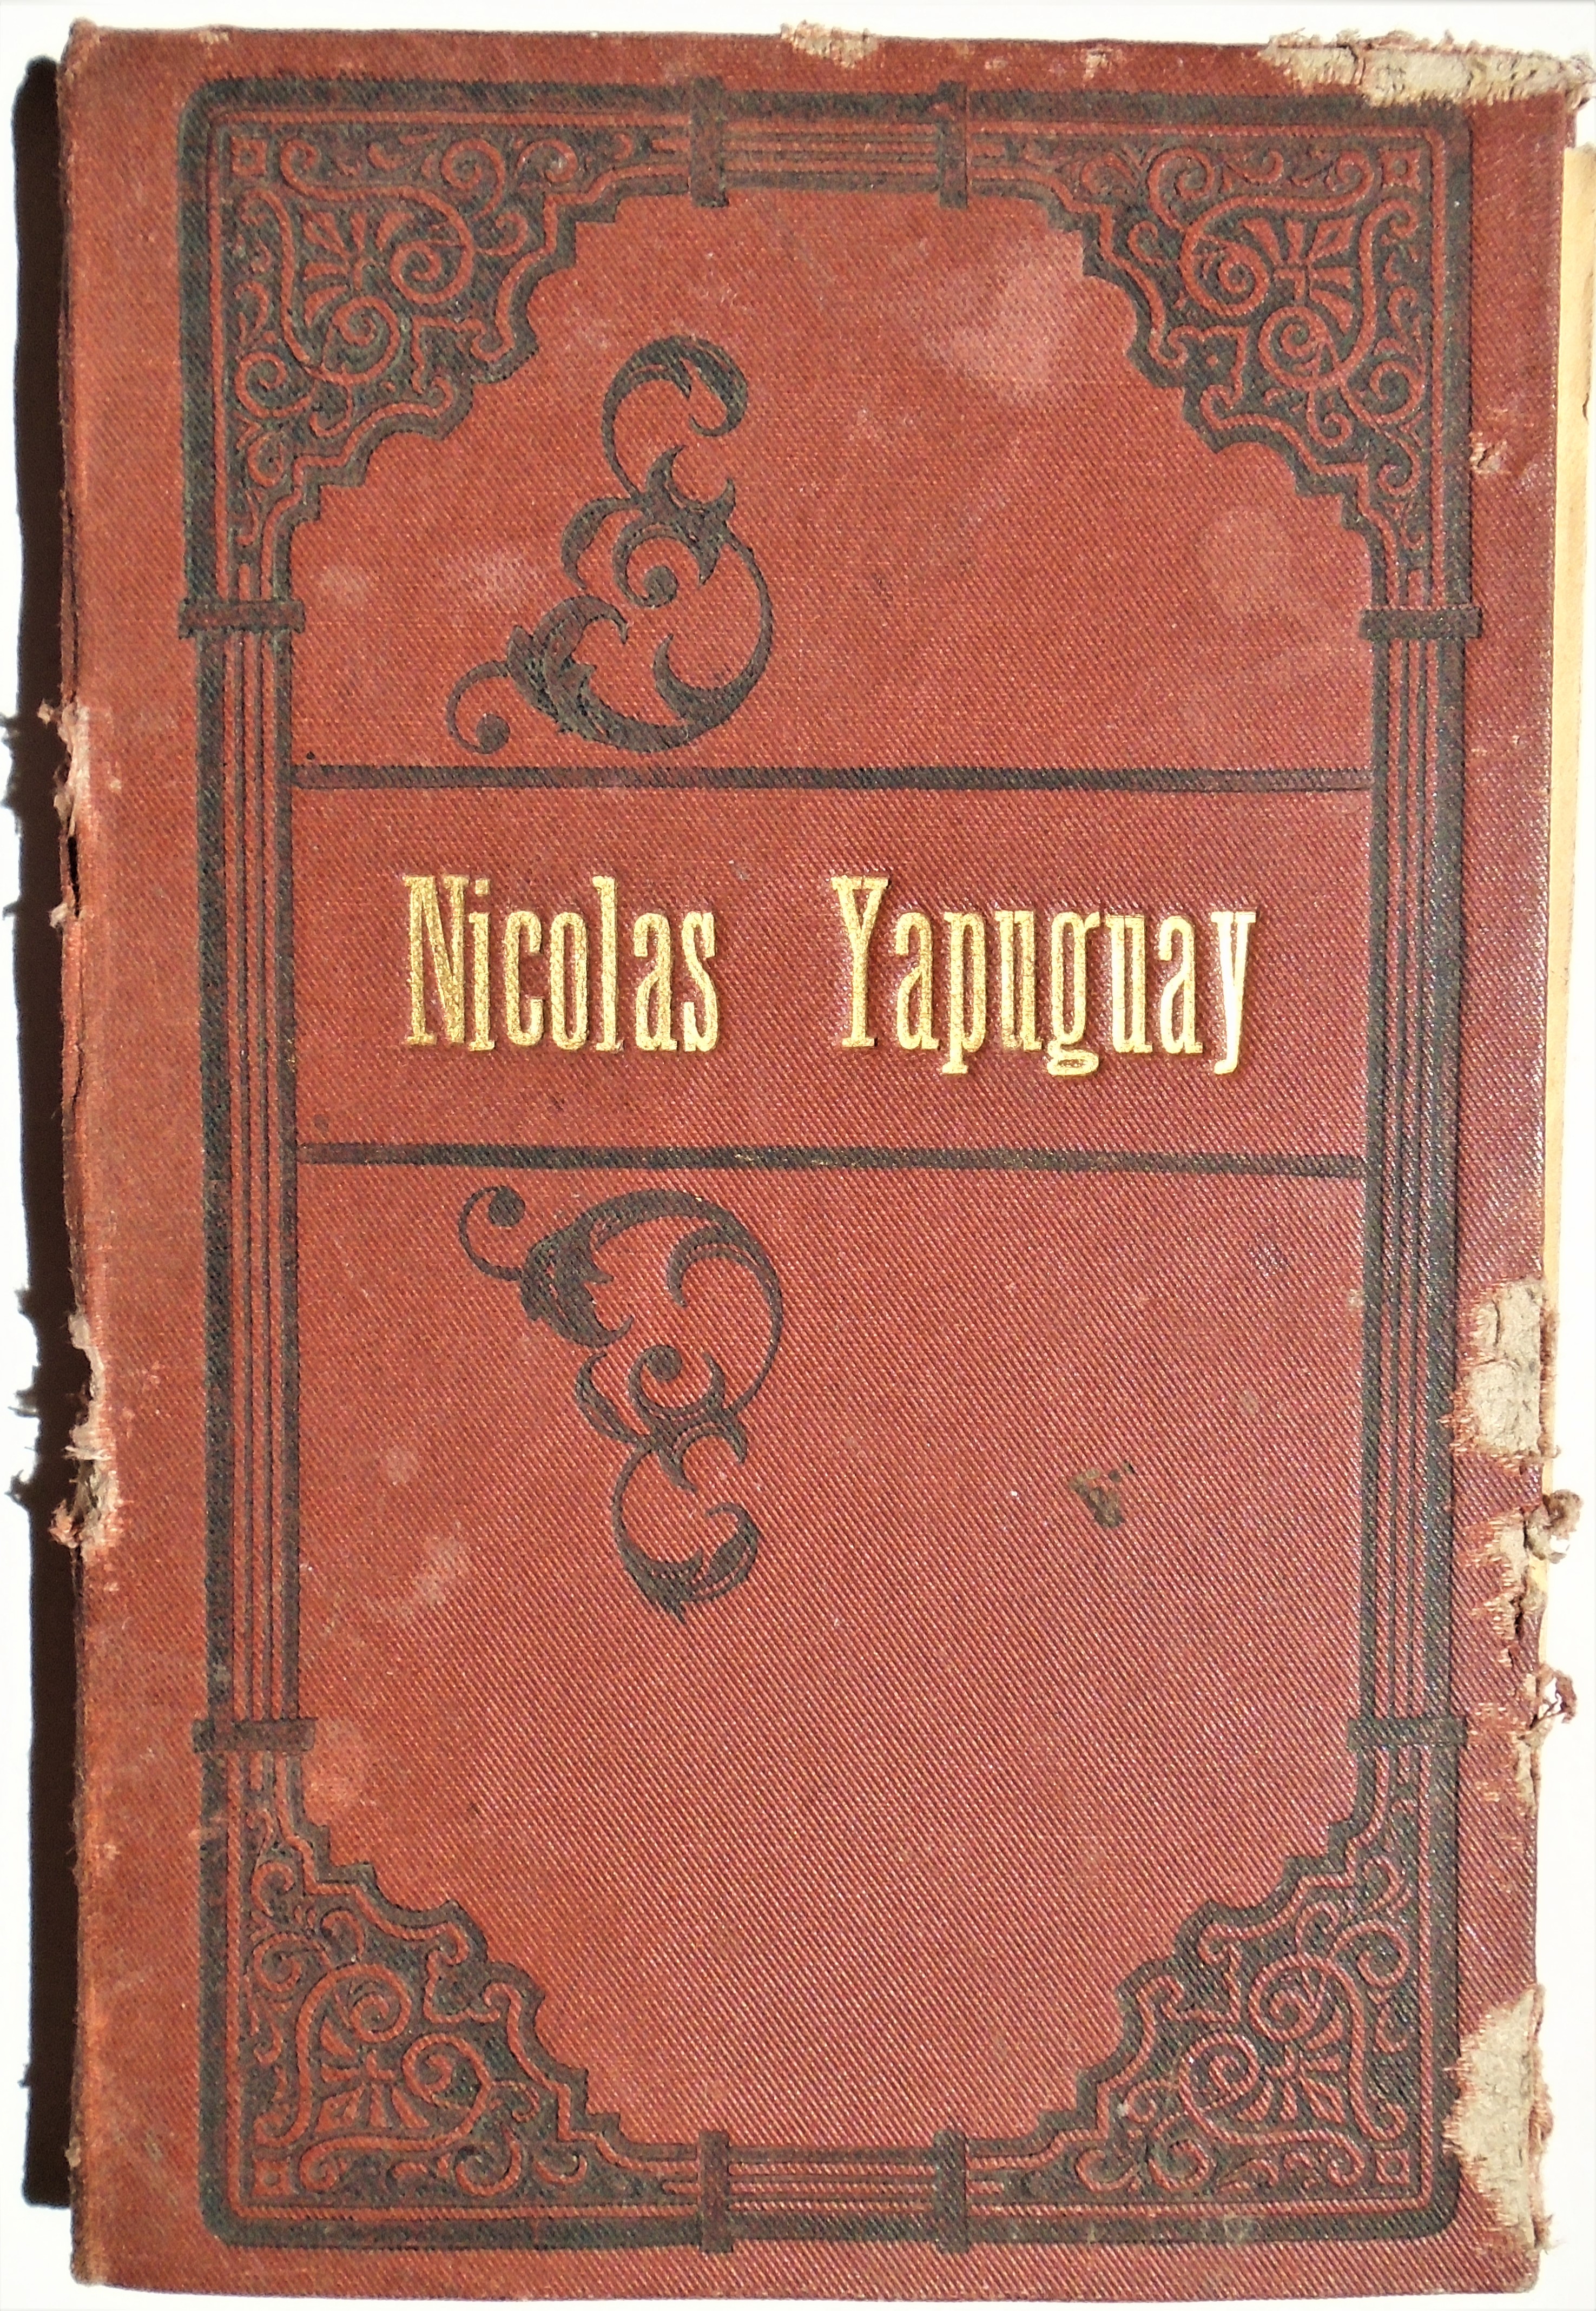 Nicolas Yapuguay - Historia da paixão de Christo